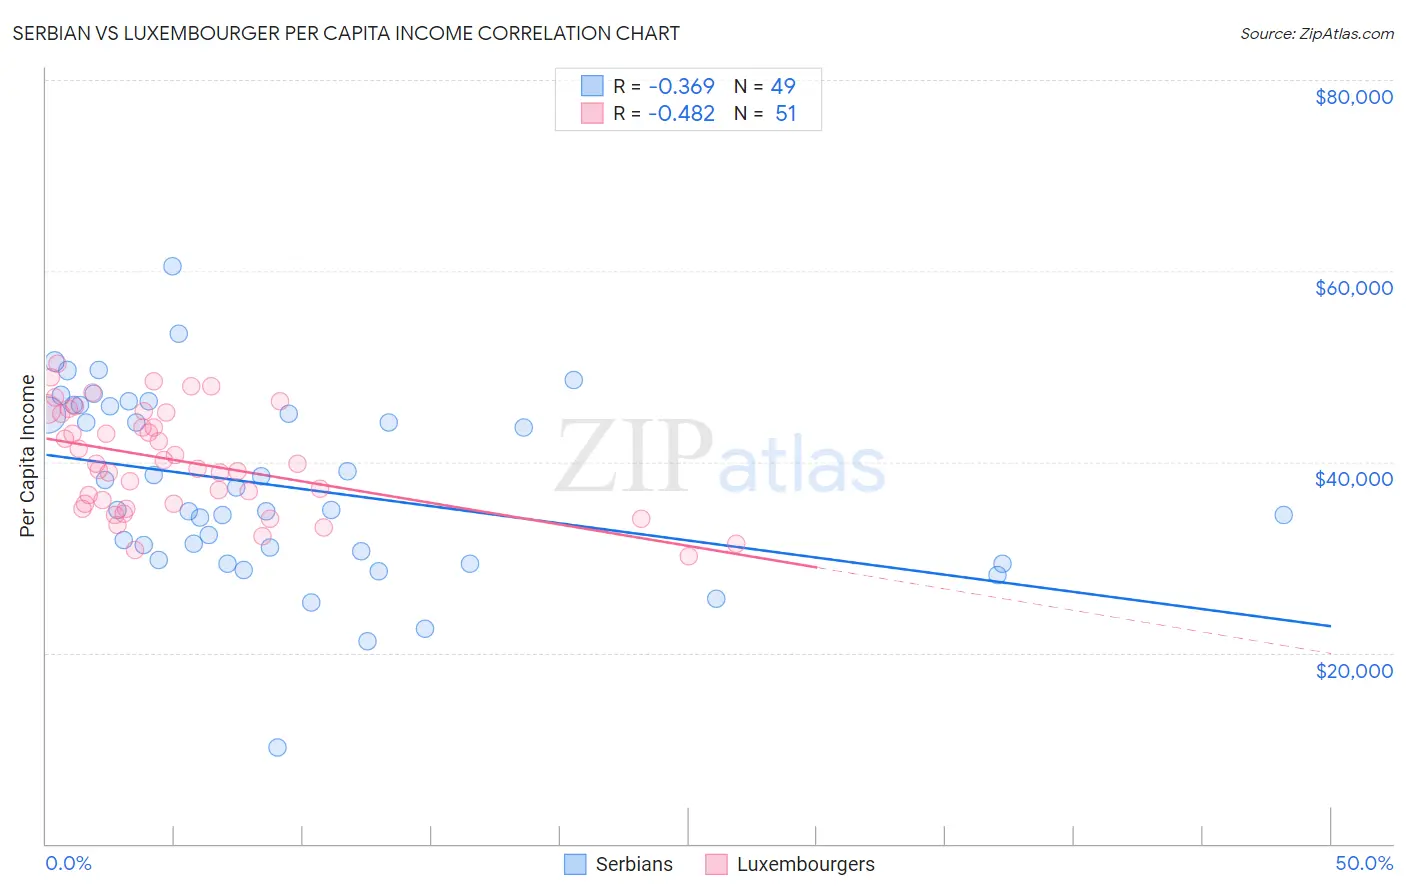 Serbian vs Luxembourger Per Capita Income